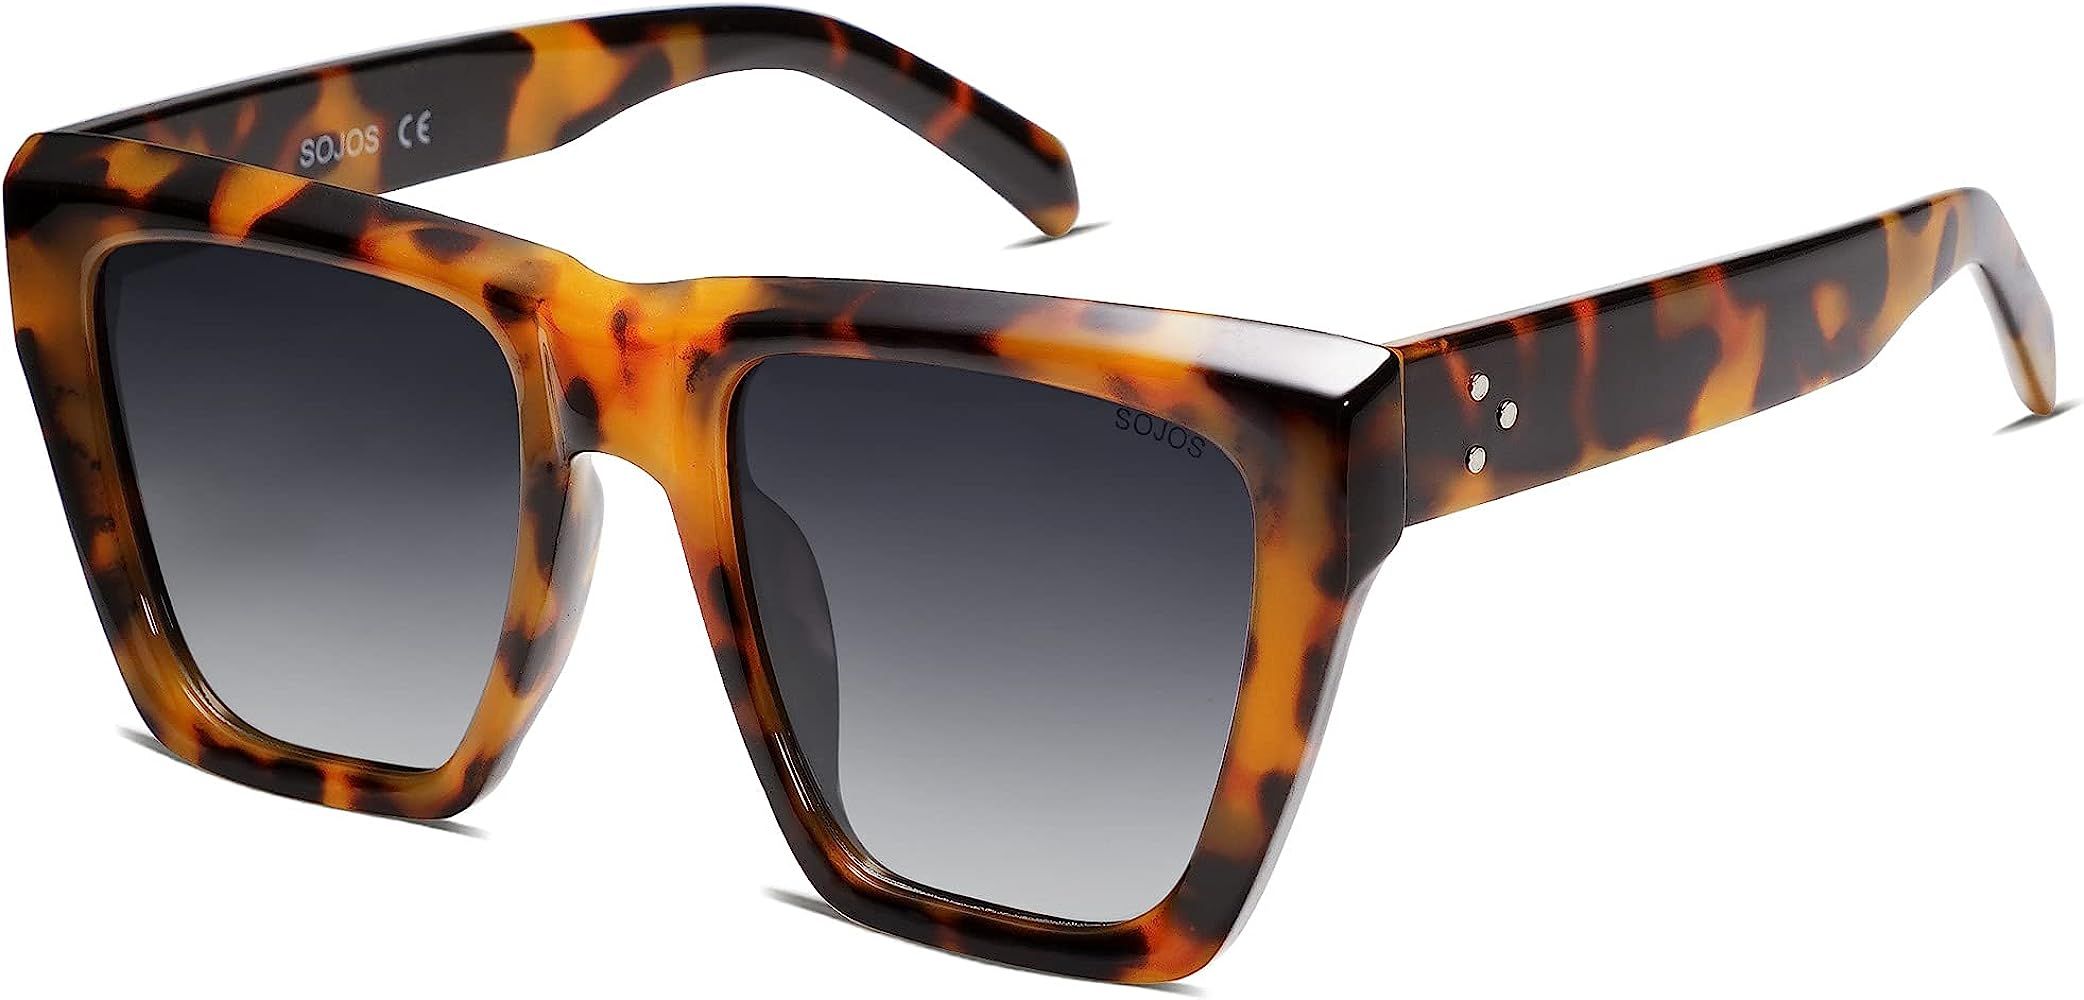 SOJOS Vintage Oversized Square Cat Eye Polarized Sunglasses for Women Trendy Fashion Cateye Style Su | Amazon (US)